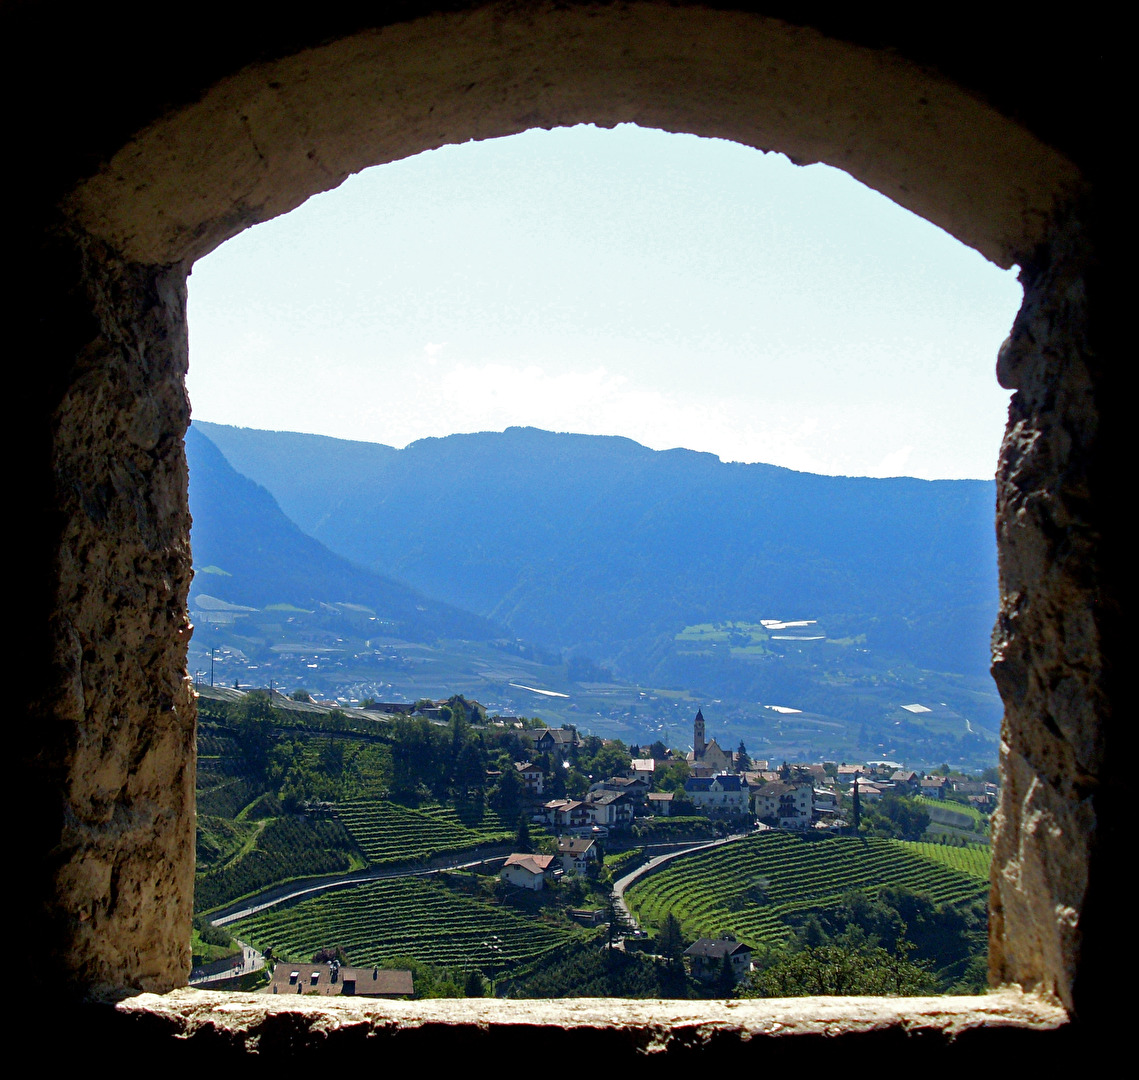 Fotowettbewerb: das Fenster einer Burg in Südtirol